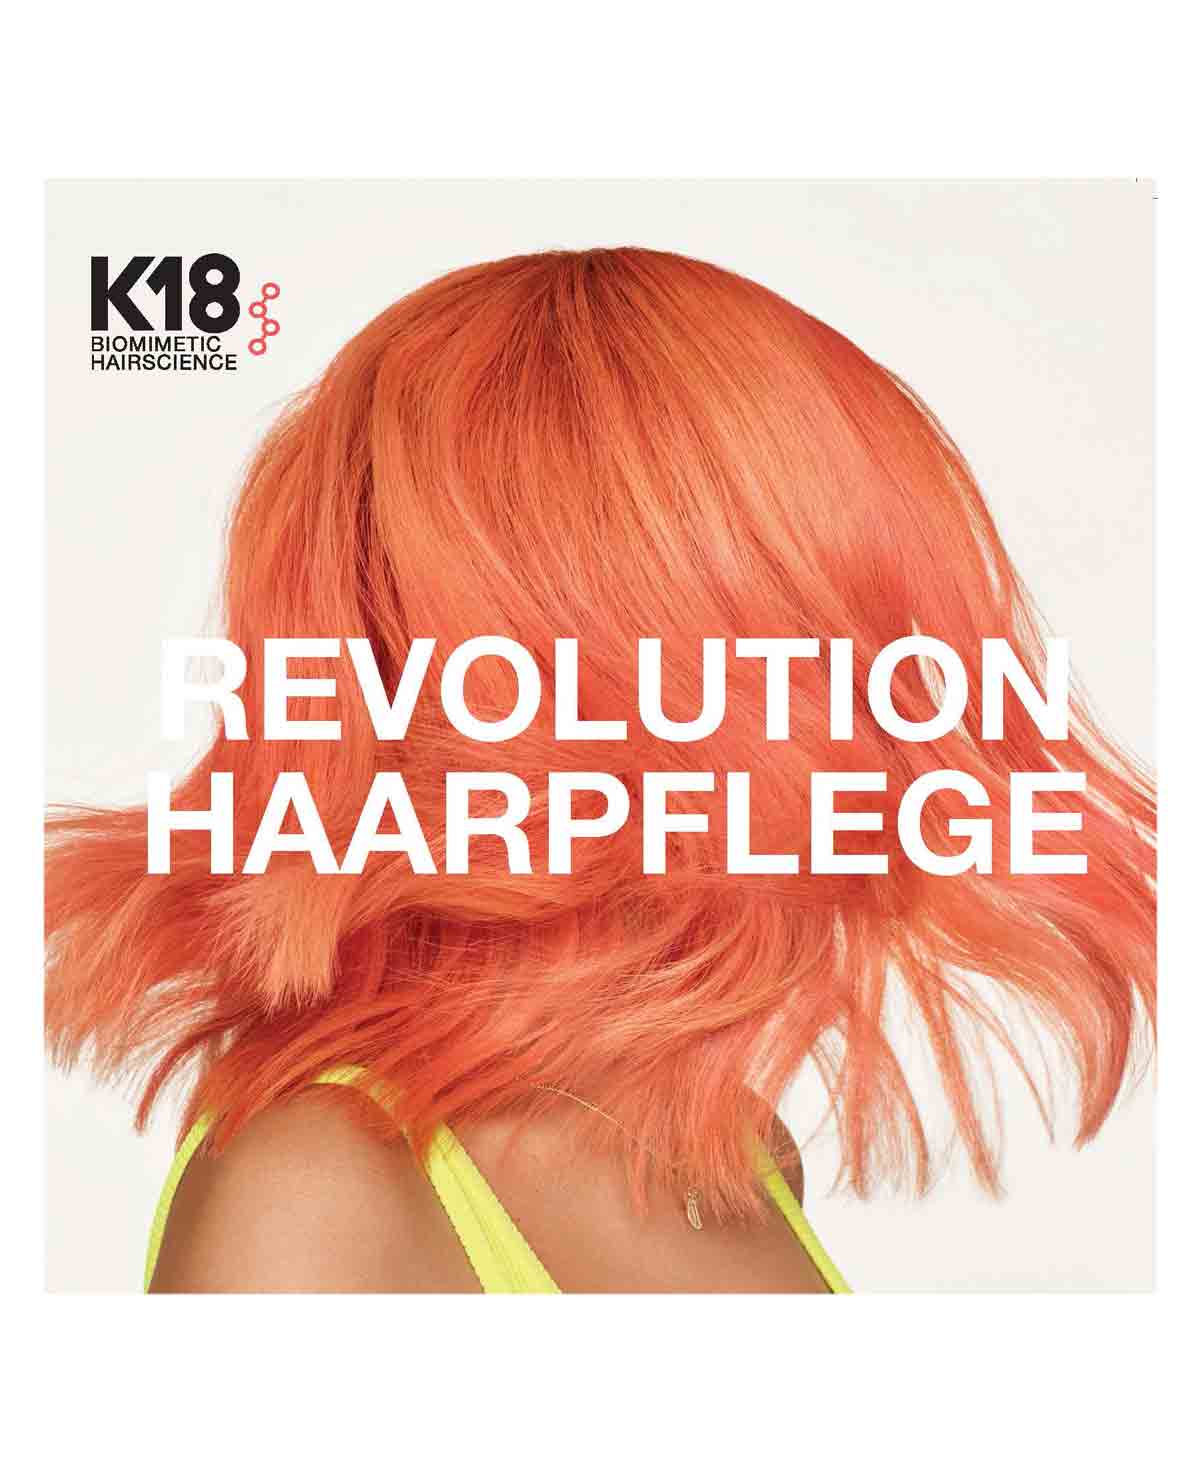 K18 Hair Mask Brochure FR